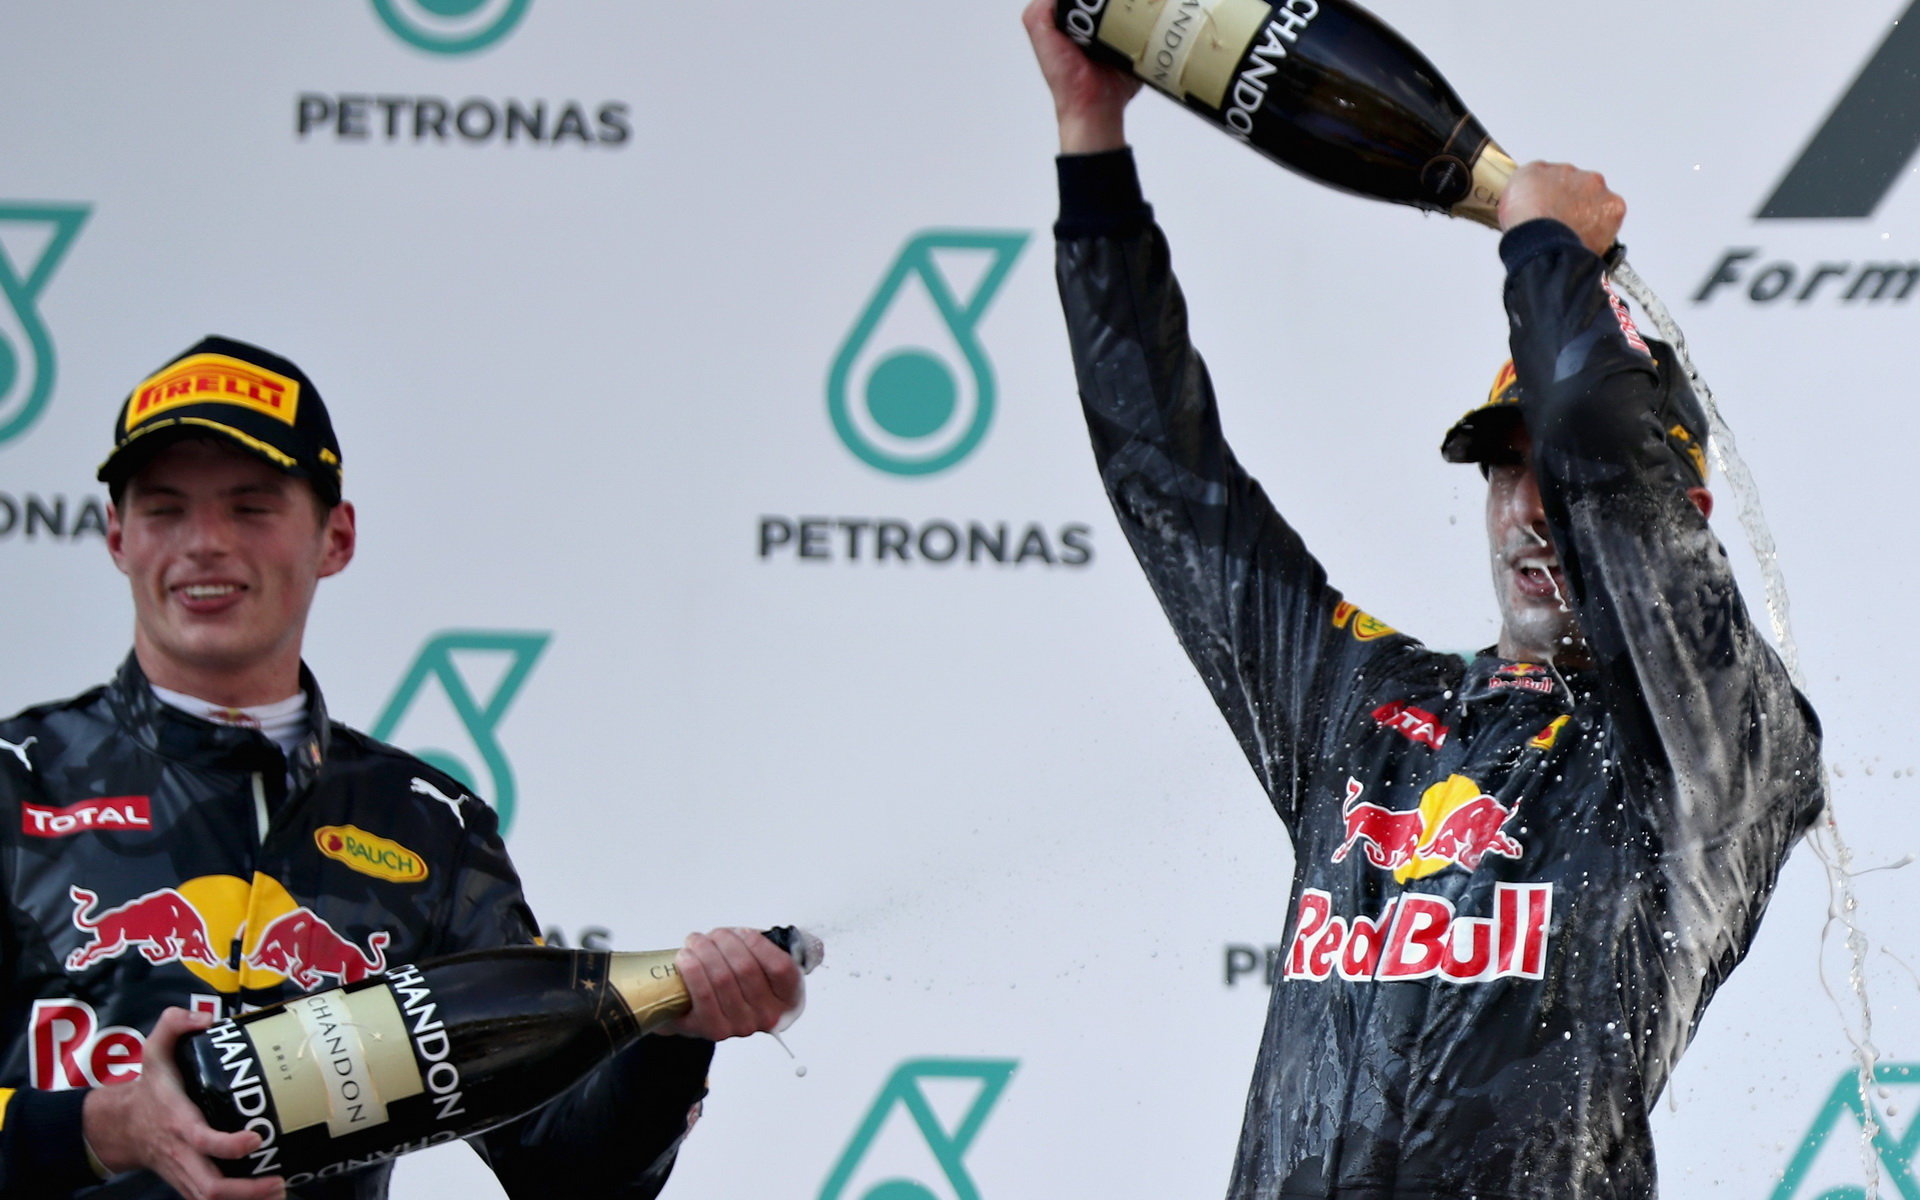 Max Verstappen a Daniel Ricciardo na pódiu po závodě v Malajsii